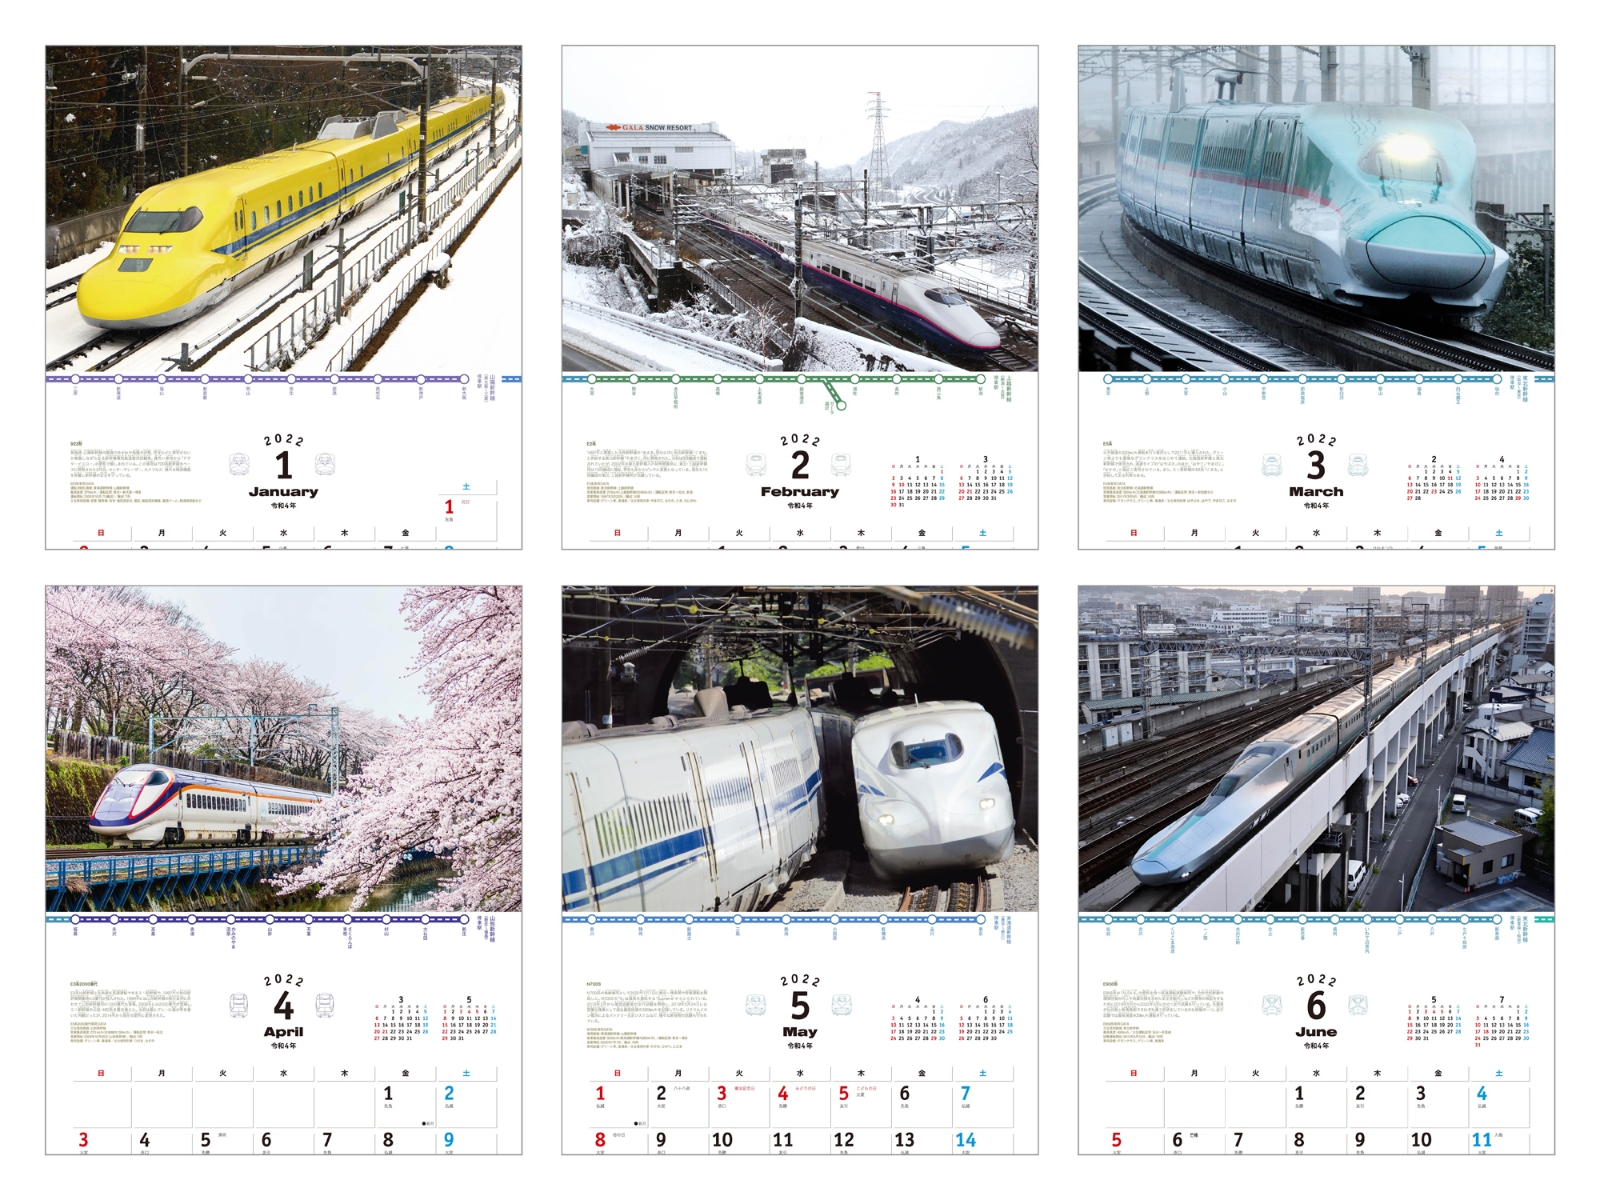 楽天ブックス 楽天ブックス限定特典 日本を駆ける新幹線カレンダー 22 特典データ スマホ壁紙に使えるオリジナル新幹線デザイン画像 本